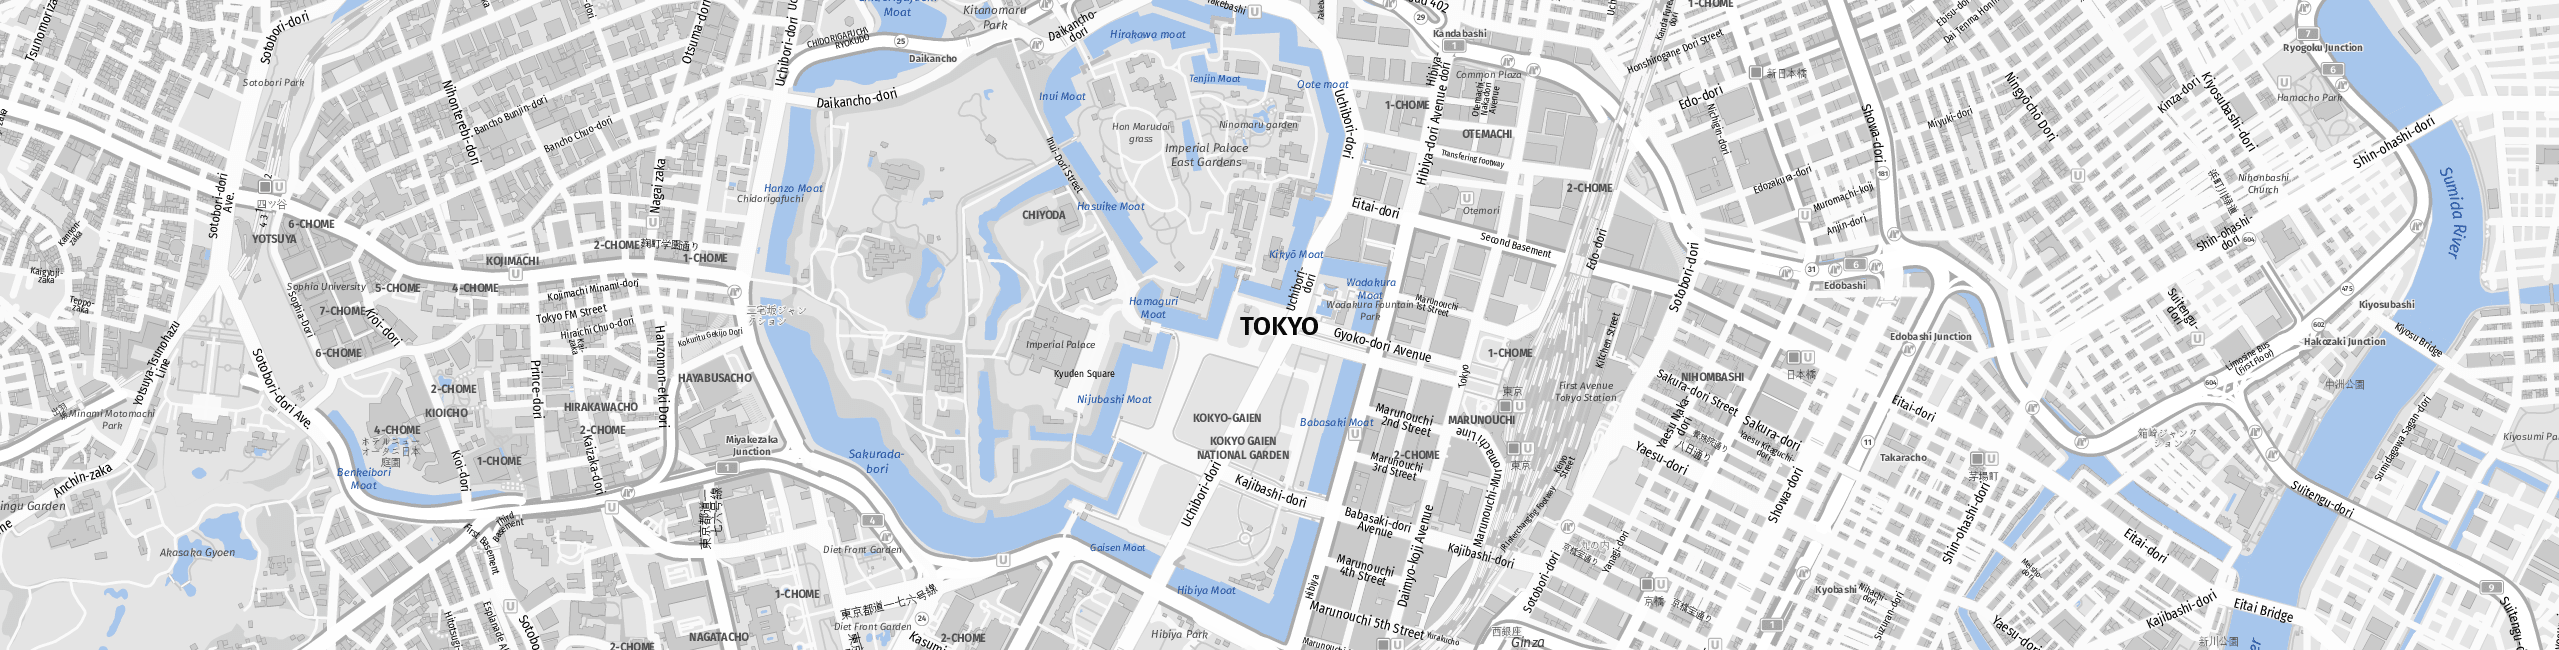 Stadtplan Tokyo zum Downloaden.